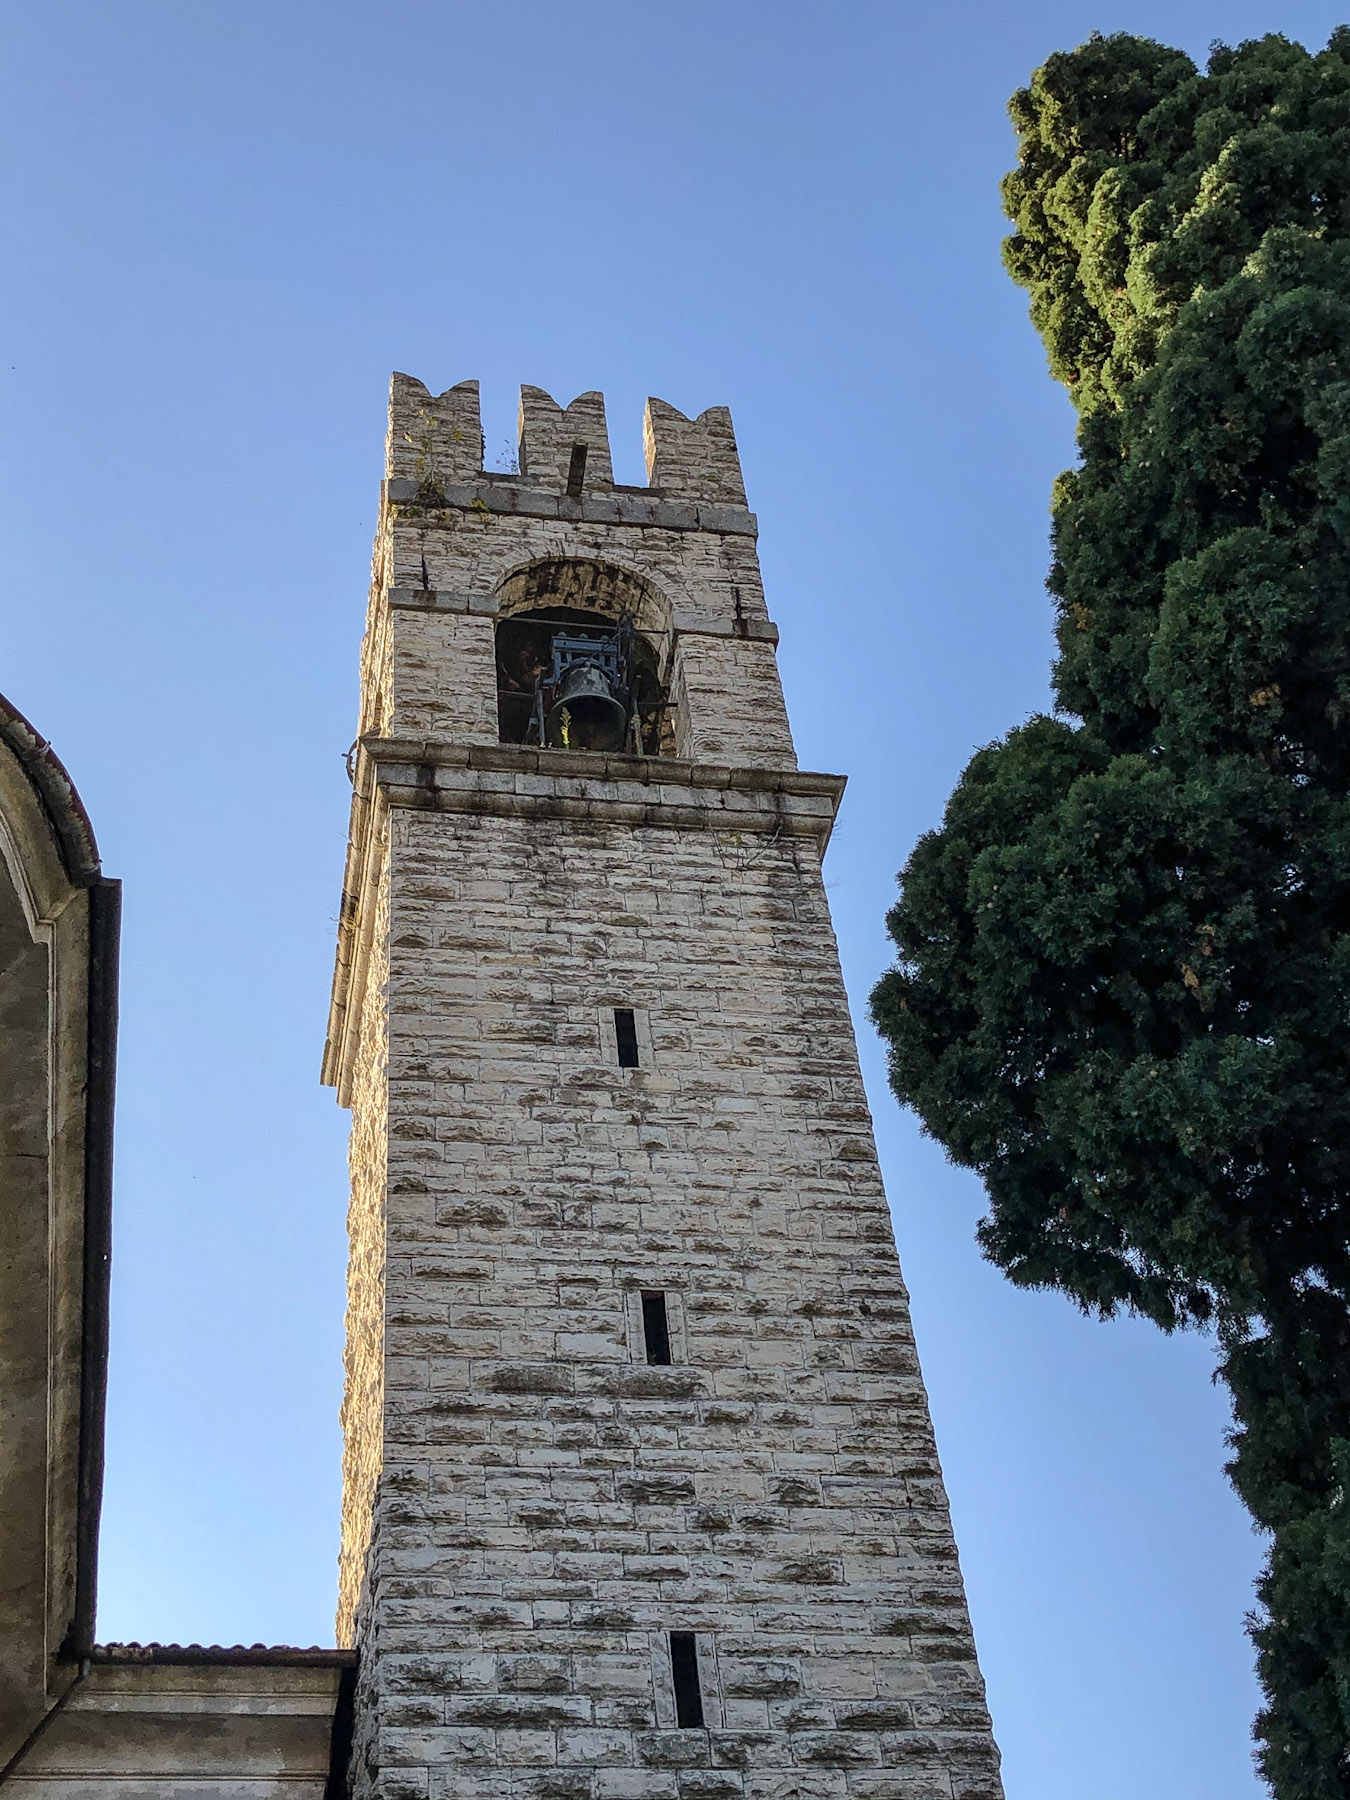 Campanile of Chiesa dei Santi Faustino e Giovita, Siviano Monte Isola, Italy